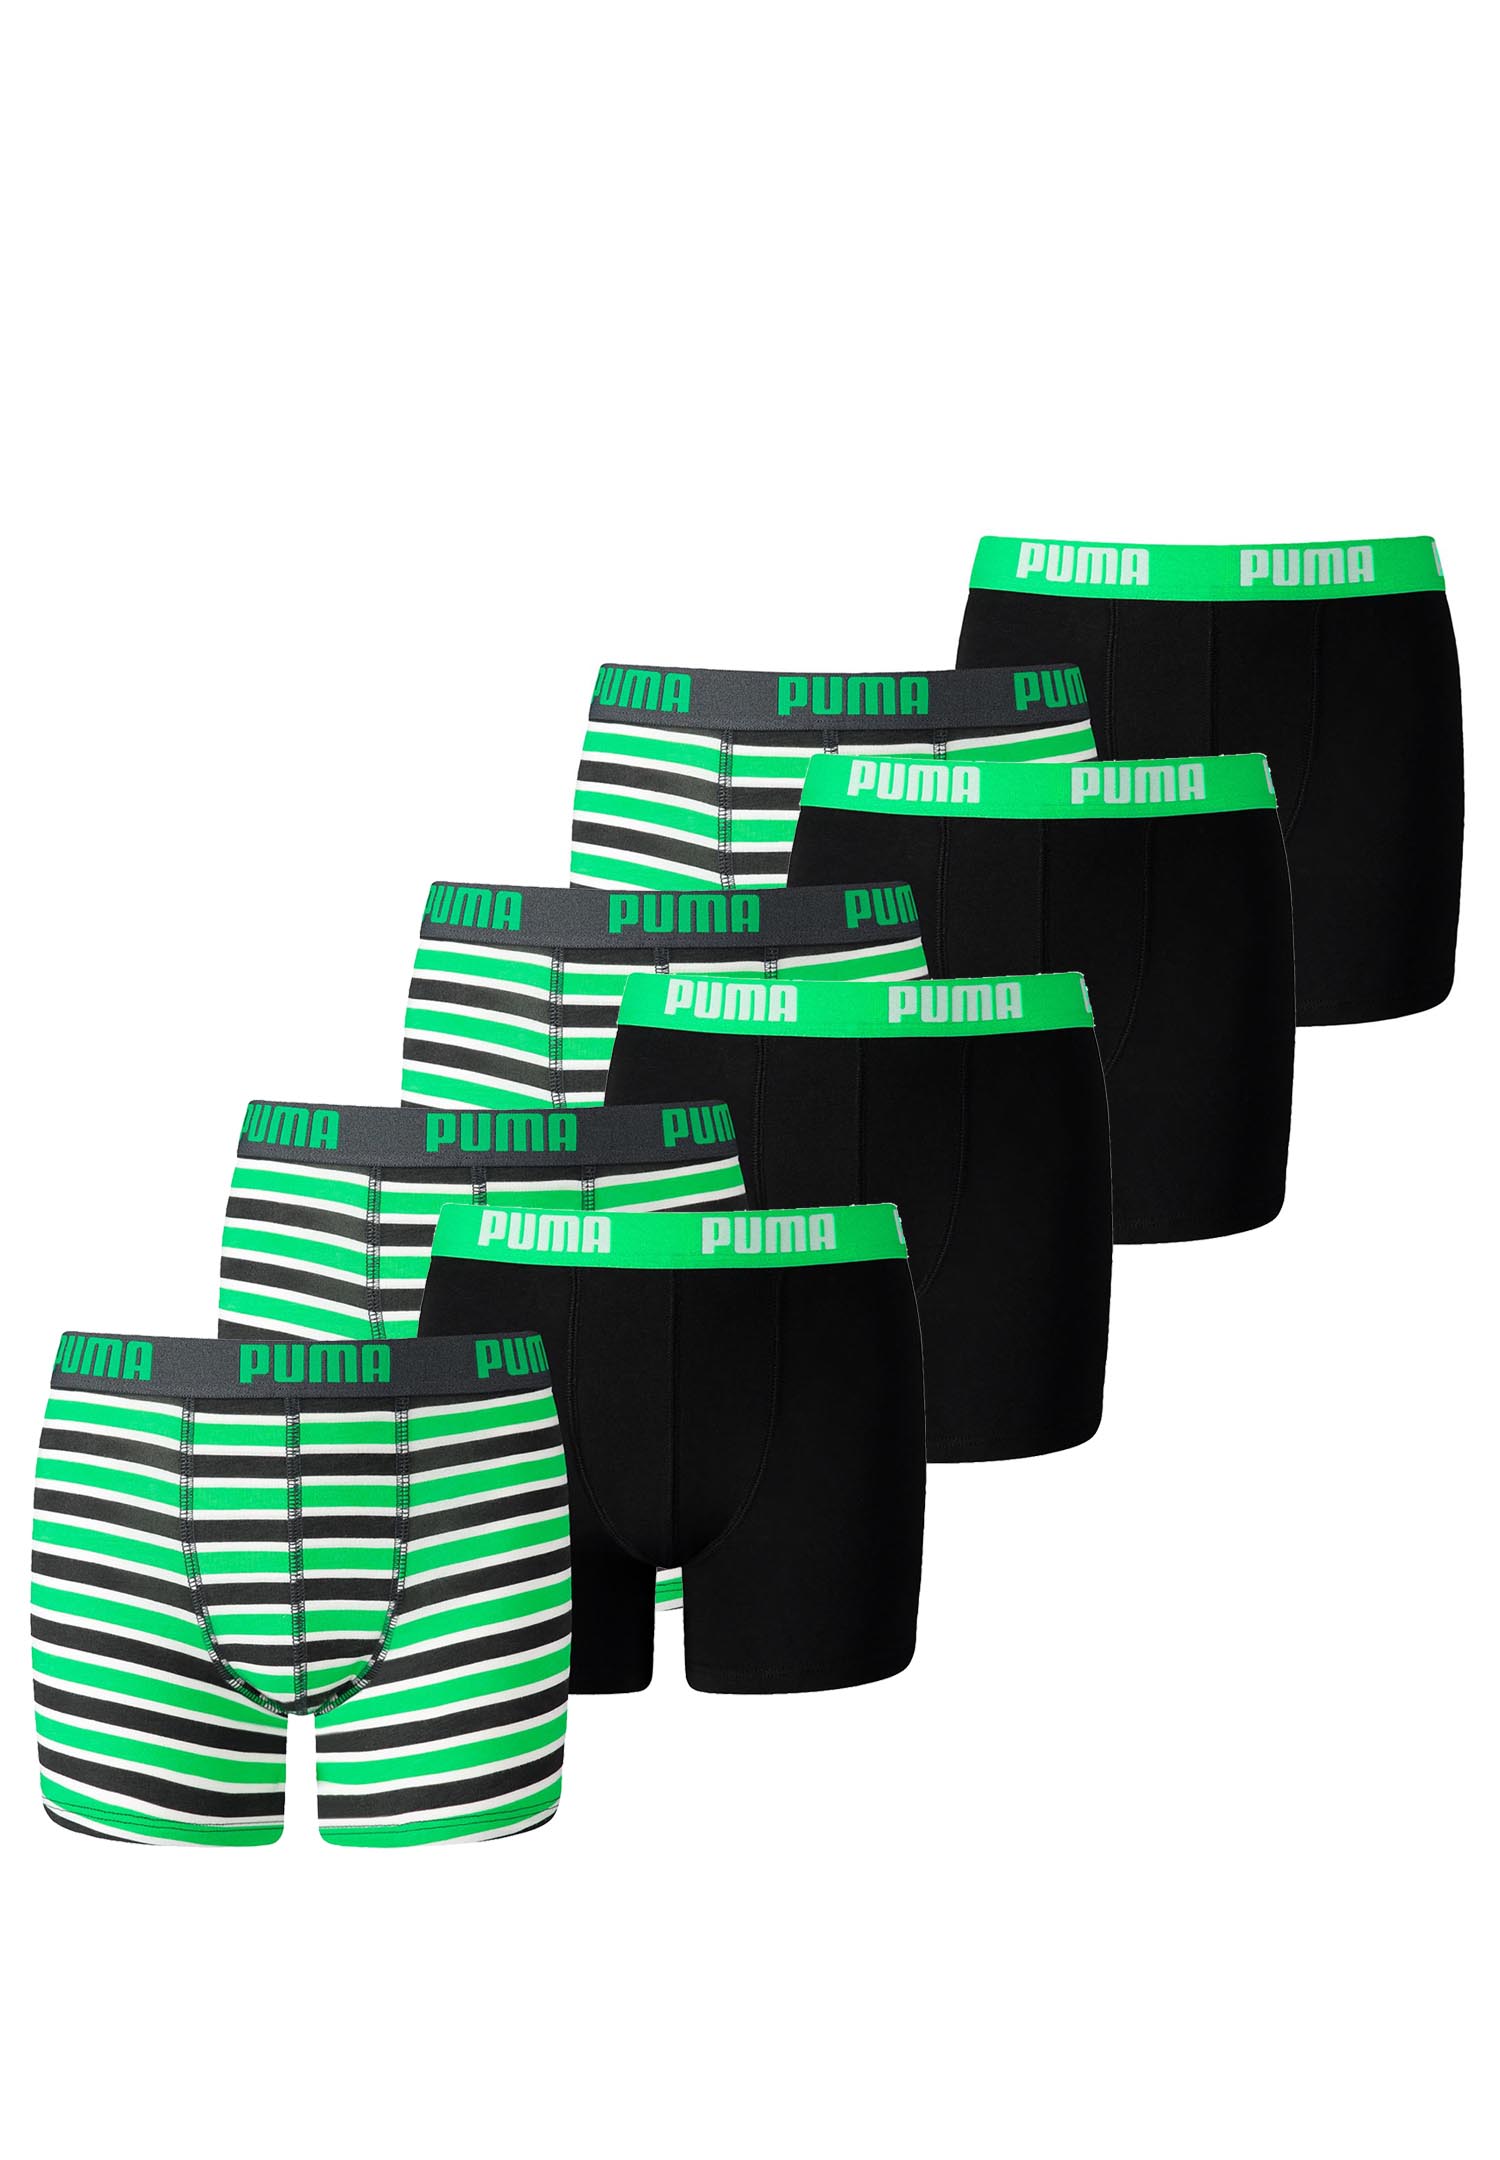 8er Pack Puma Basic Boxer Printed Stripes Boxershorts Jungen Kinder Unterhose